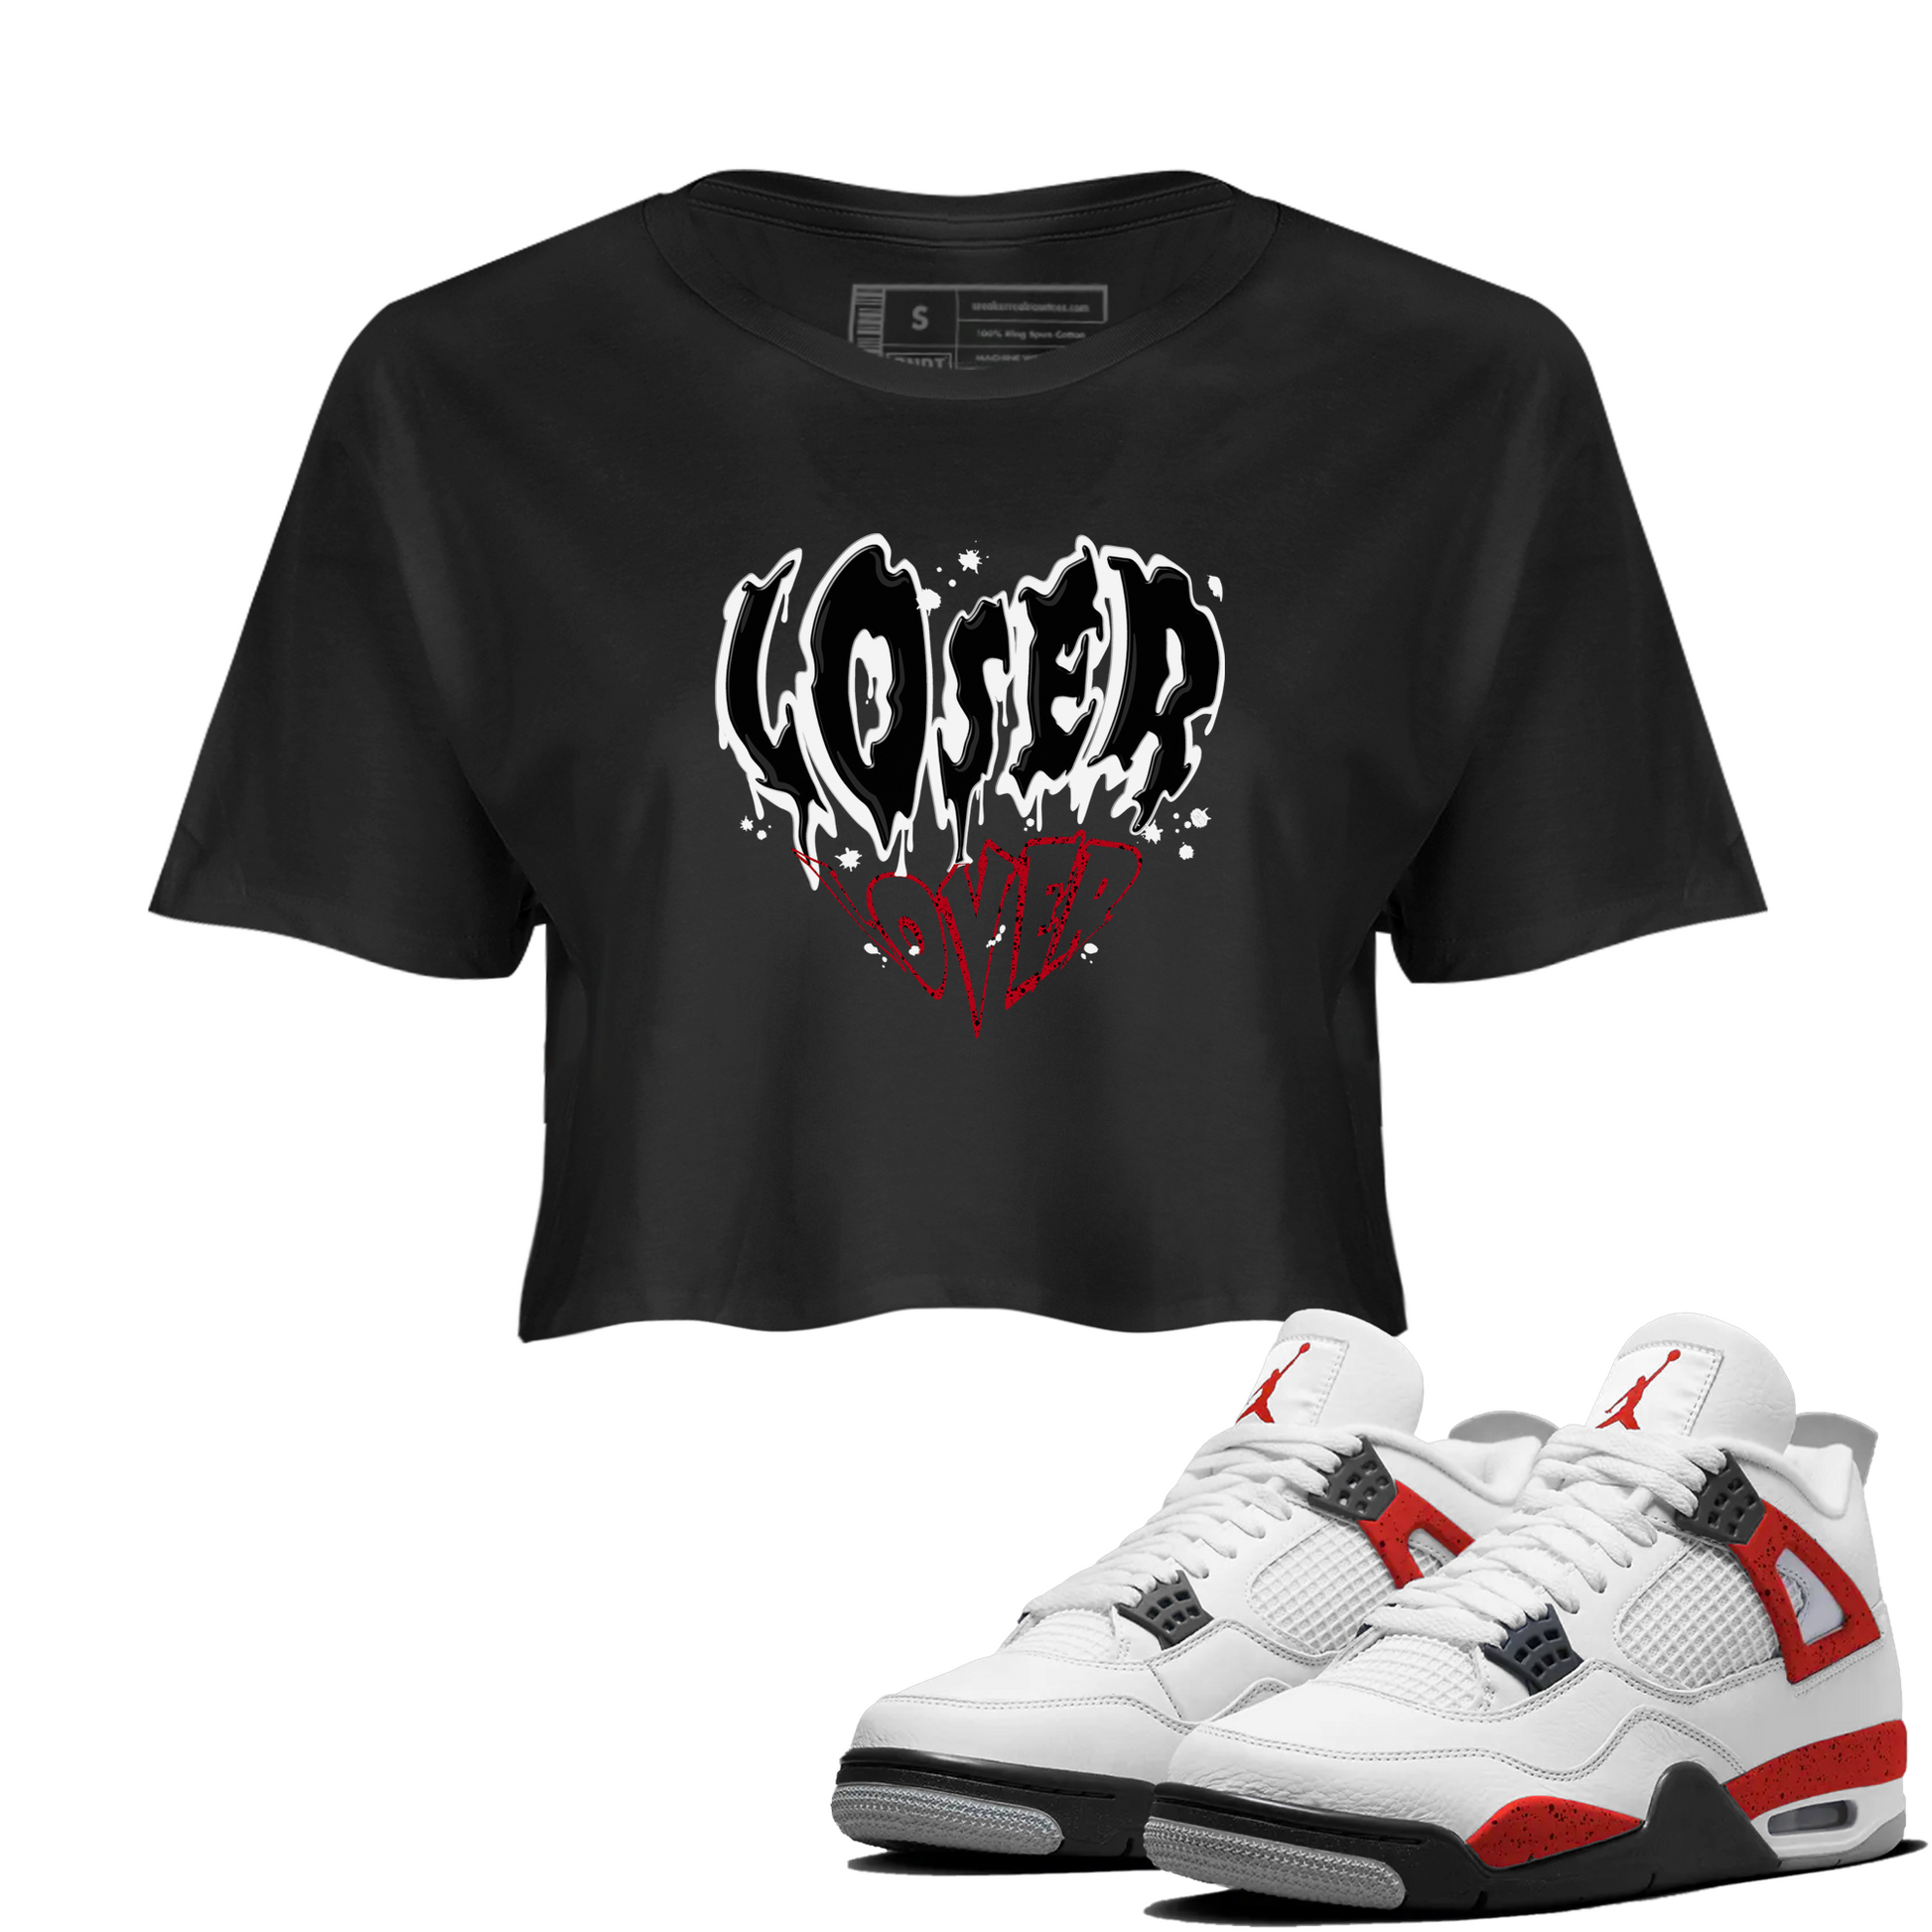 Red Cement 4 shirt to match jordans Melting Loser Lover Streetwear Sneaker Shirt Air Jordan 4 Red Cement Drip Gear Zone Sneaker Matching Clothing Black 1 Crop T-Shirt